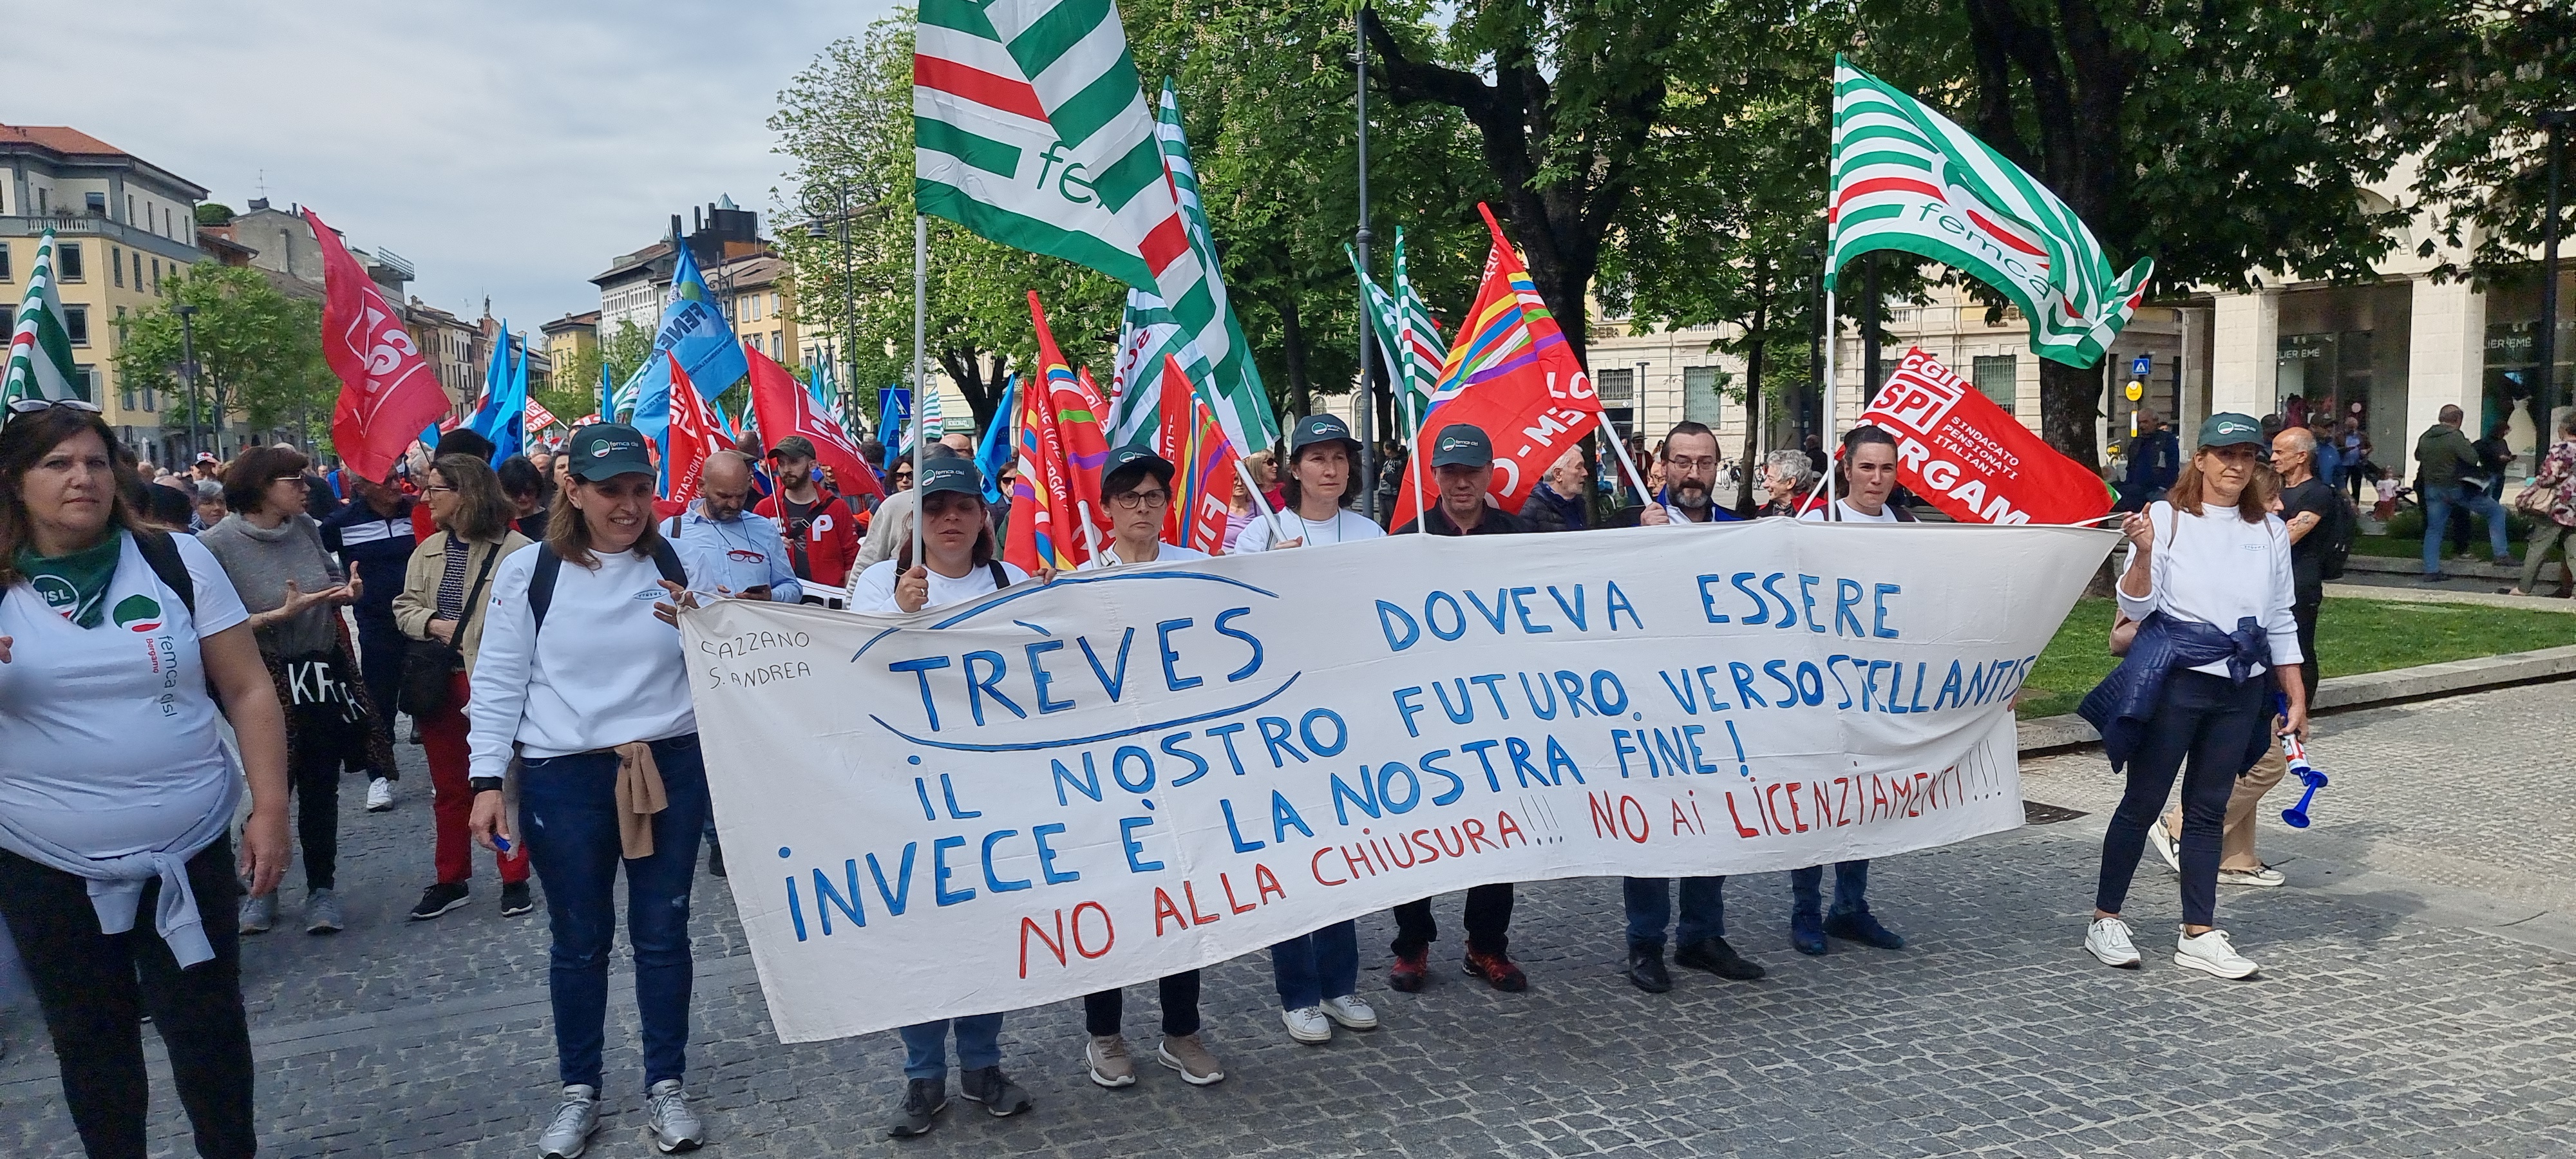 Le richieste sindacali e il muro della Trèves di Cazzano Sant’Andrea